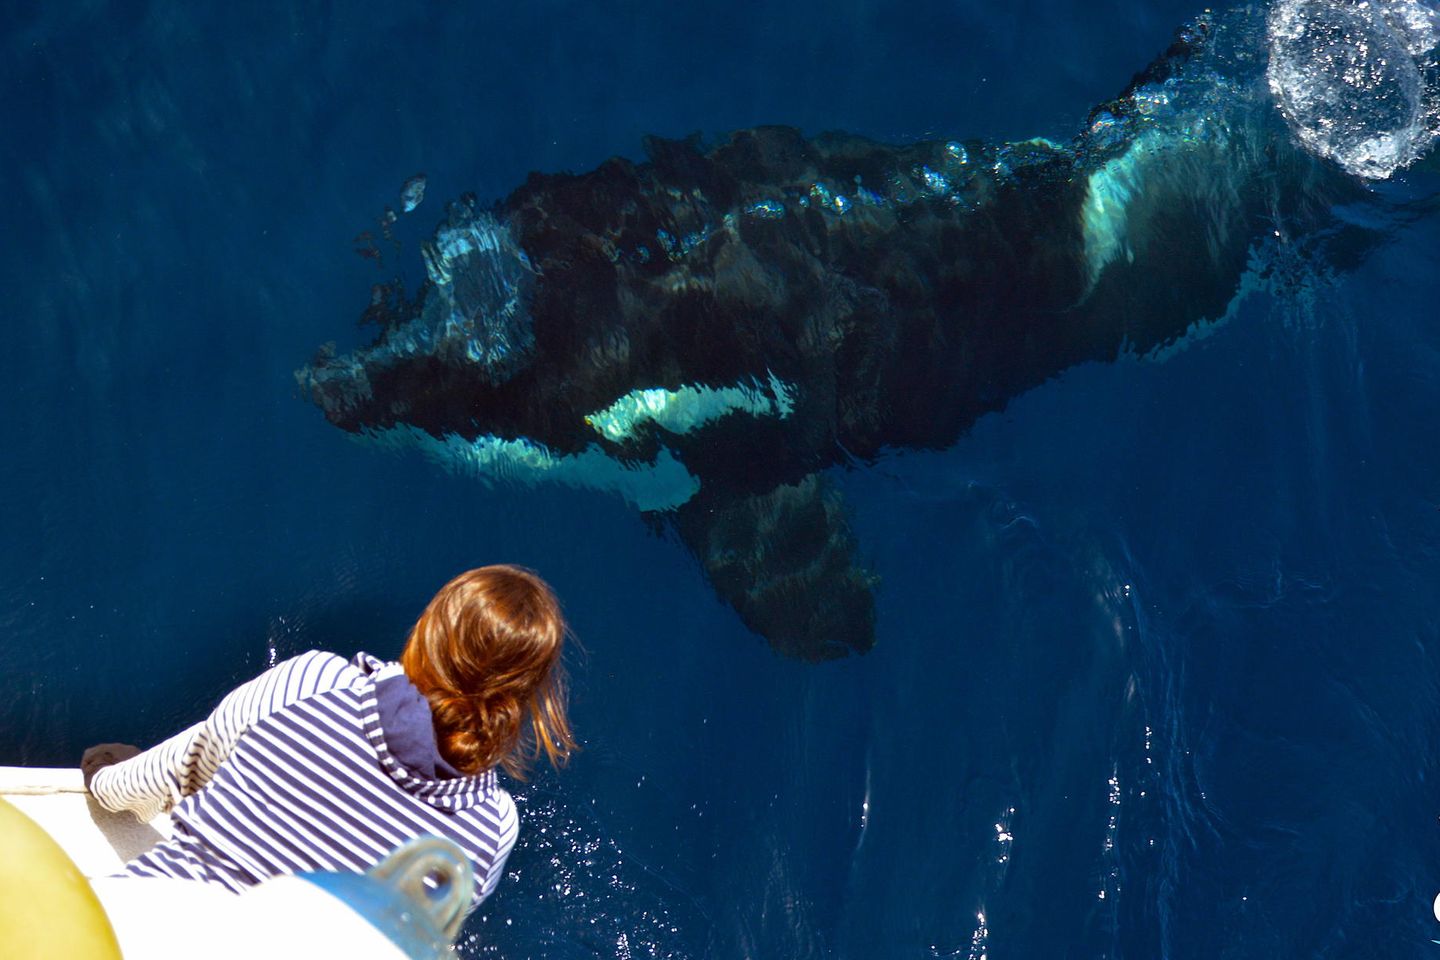 Orcas sind Top-Predatoren der Meere. Dennoch ist bislang kein Fall dokumentiert, bei dem ein Orca in freier Wildbahn einen Menschen angegriffen hätte